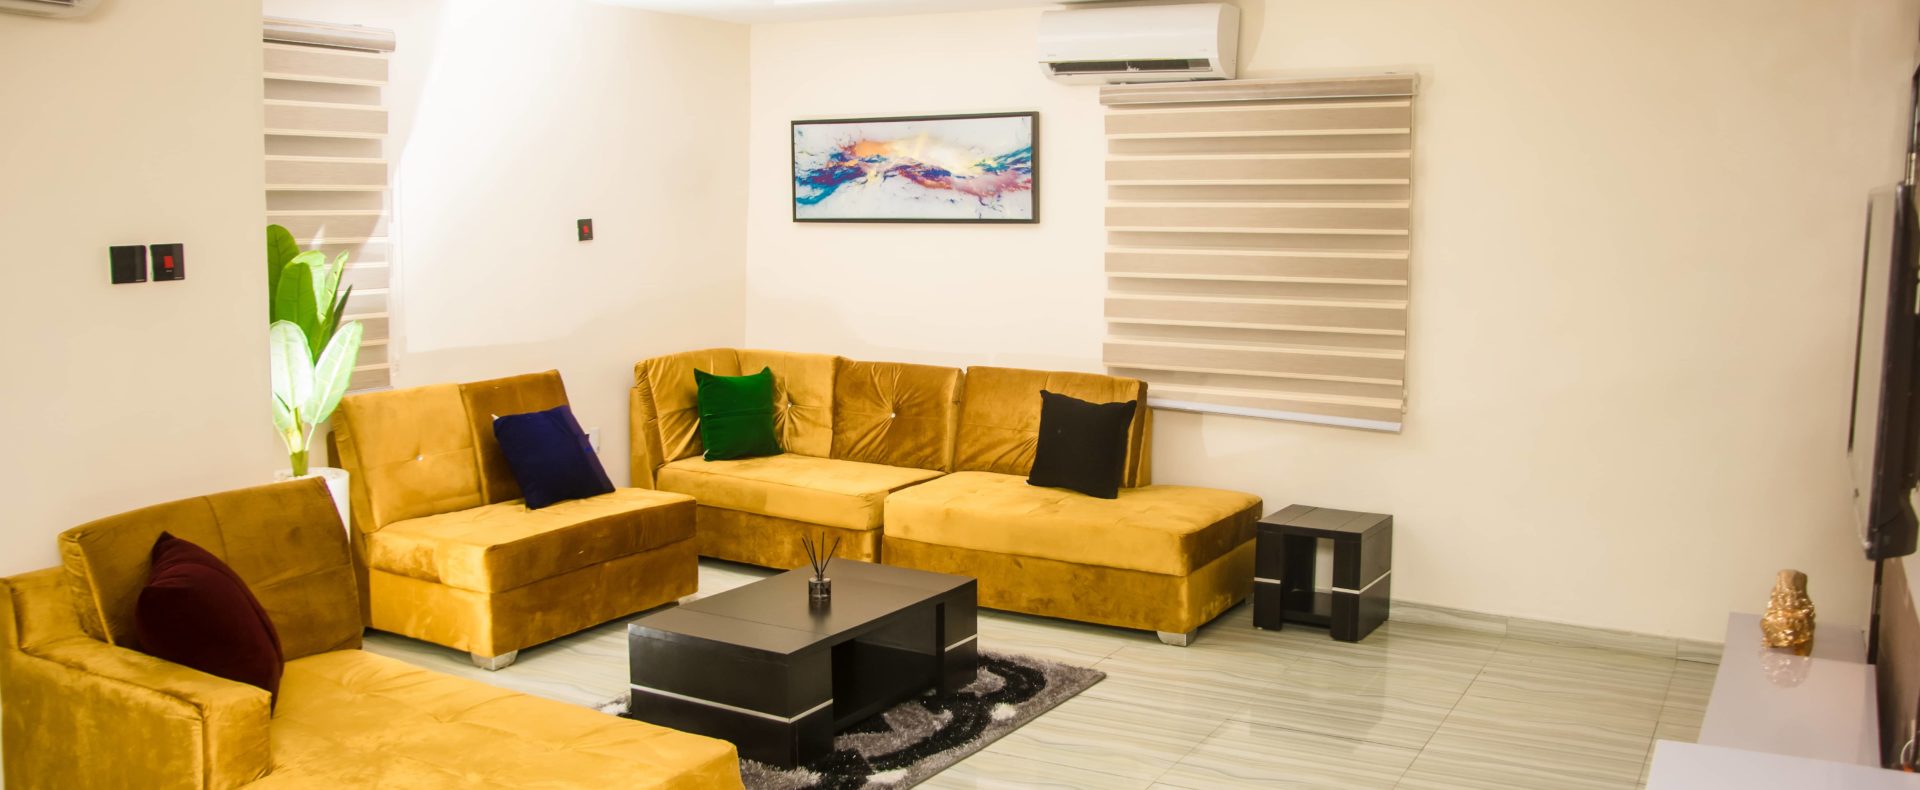 The Peninsula Icempire Signature 3 Bedroom Shortlet Apartment In Lagos Nigeria